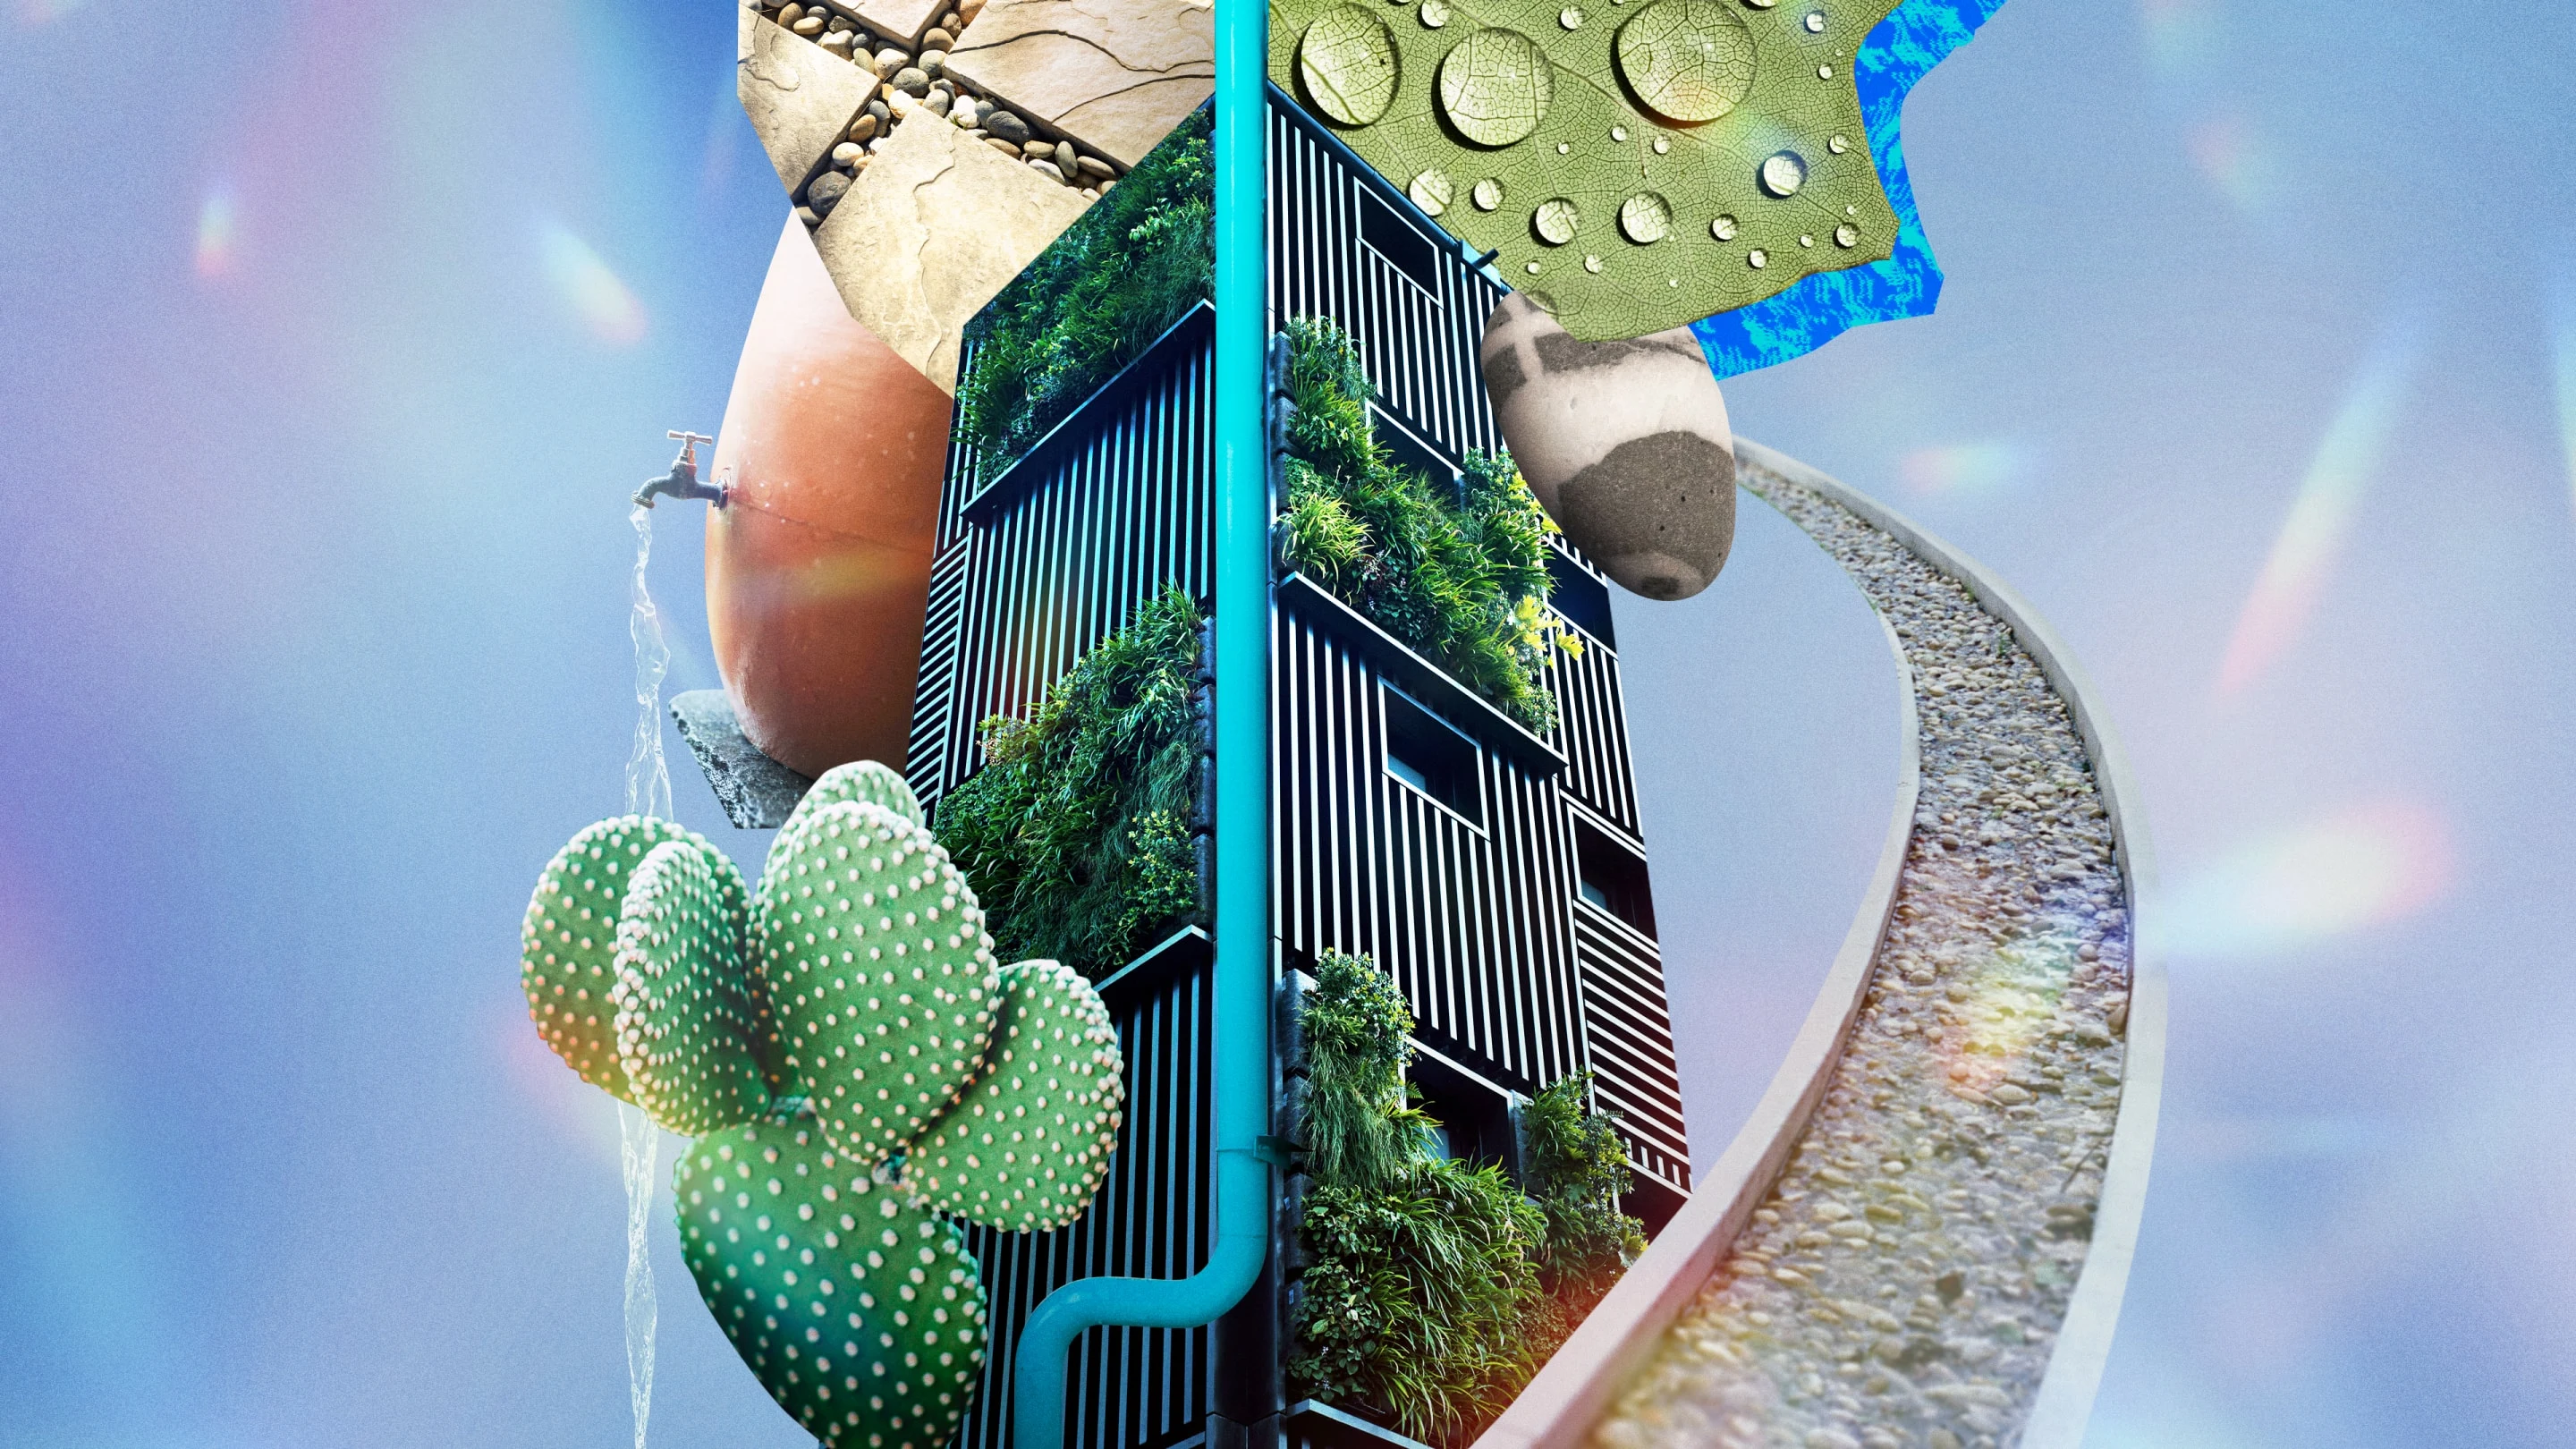 Un collage que fluye libremente con gotas de agua que se acumulan en una hoja, un camino de piedras, un cactus, un grifo de agua que fluye y un jardín vertical.